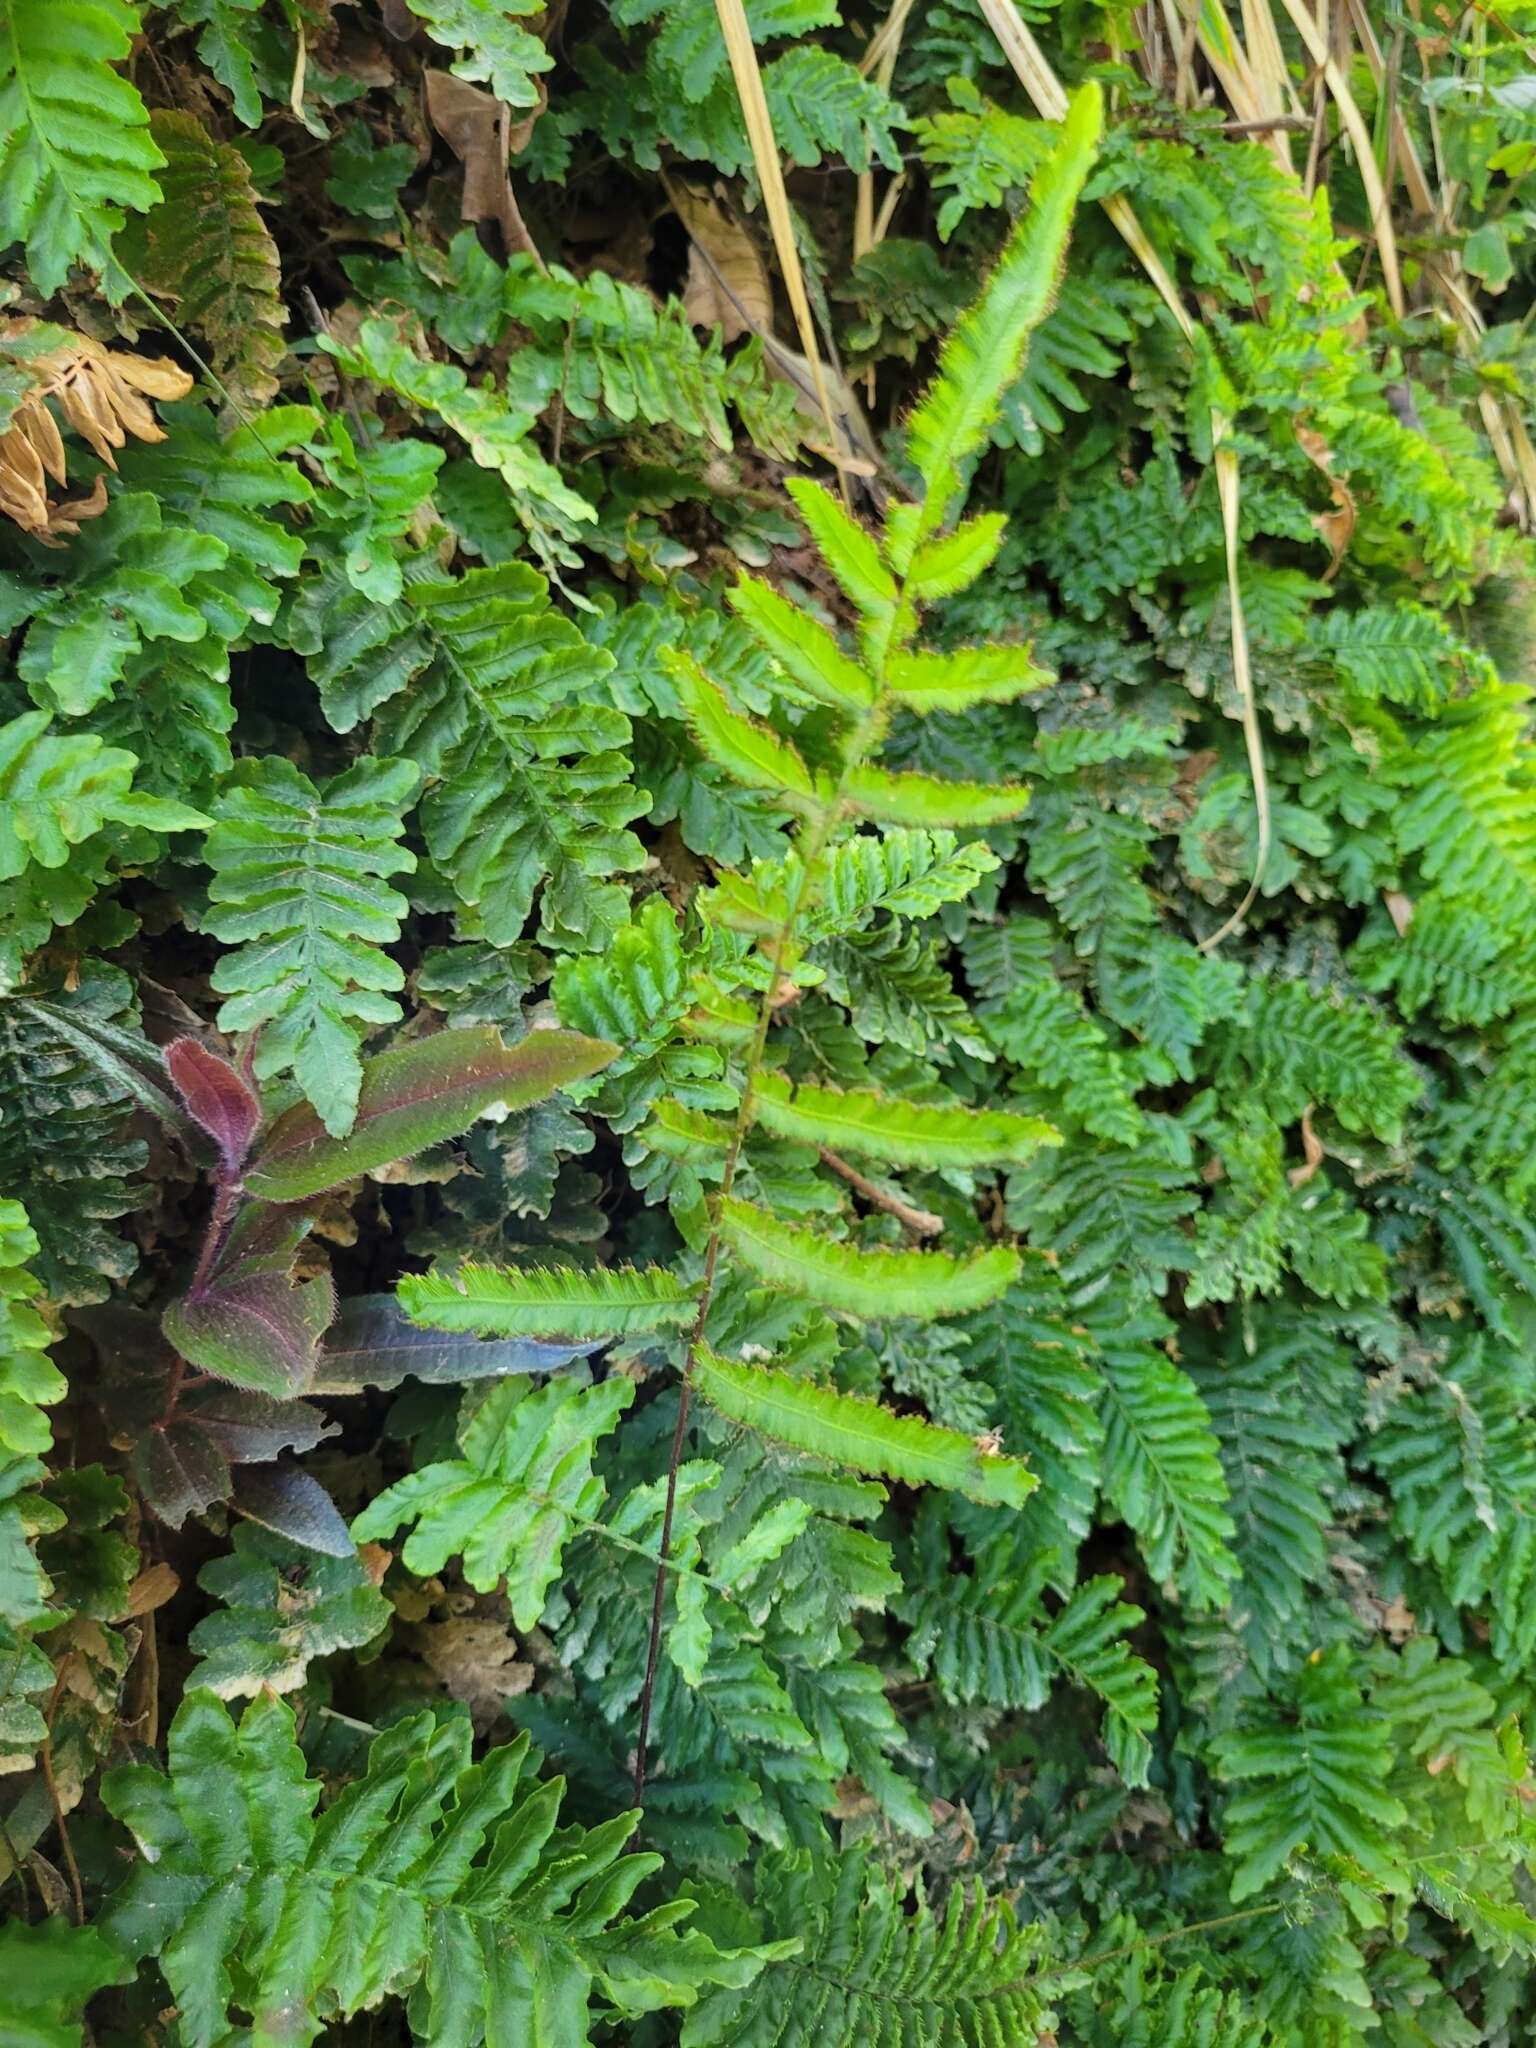 Image of tansy bristle fern